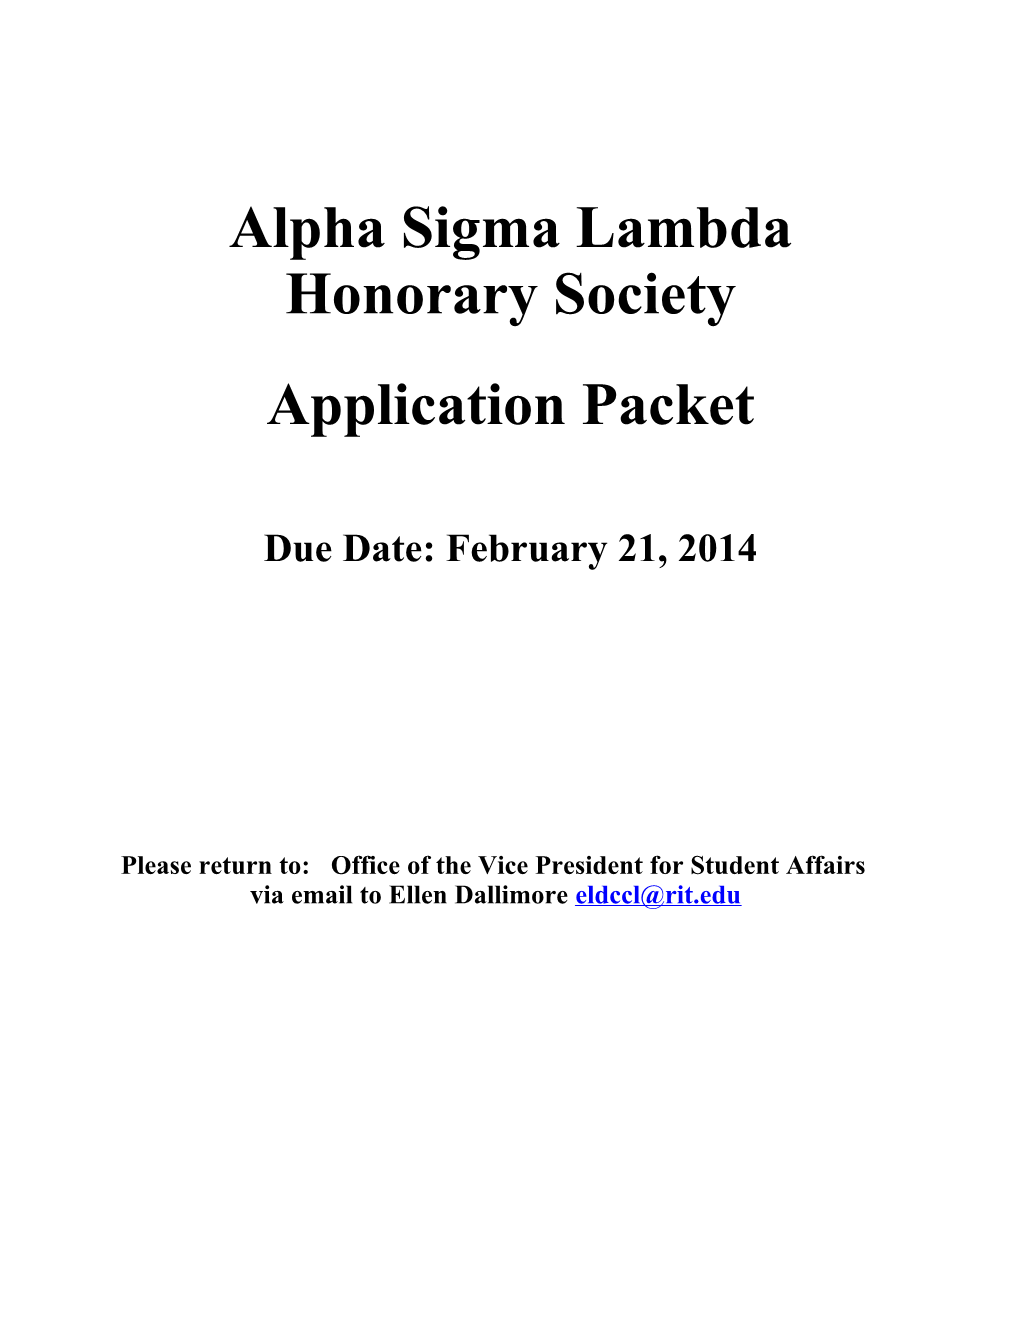 Alpha Sigma Lambda Honorary Society